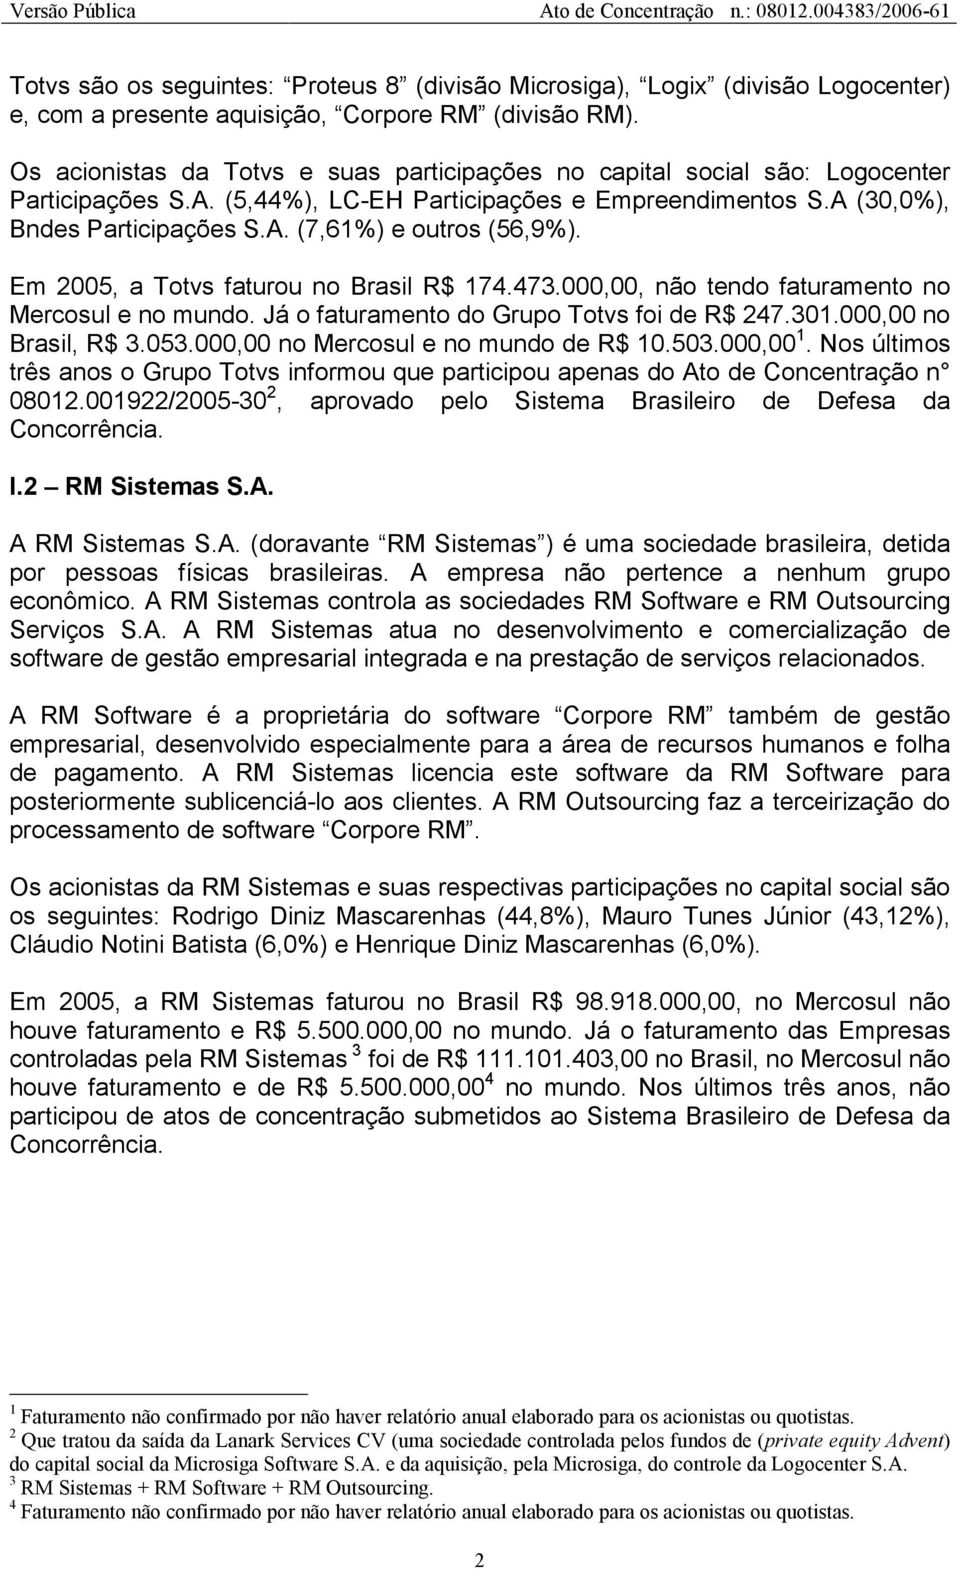 Em 2005, a Totvs faturou no Brasil R$ 174.473.000,00, não tendo faturamento no Mercosul e no mundo. Já o faturamento do Grupo Totvs foi de R$ 247.301.000,00 no Brasil, R$ 3.053.